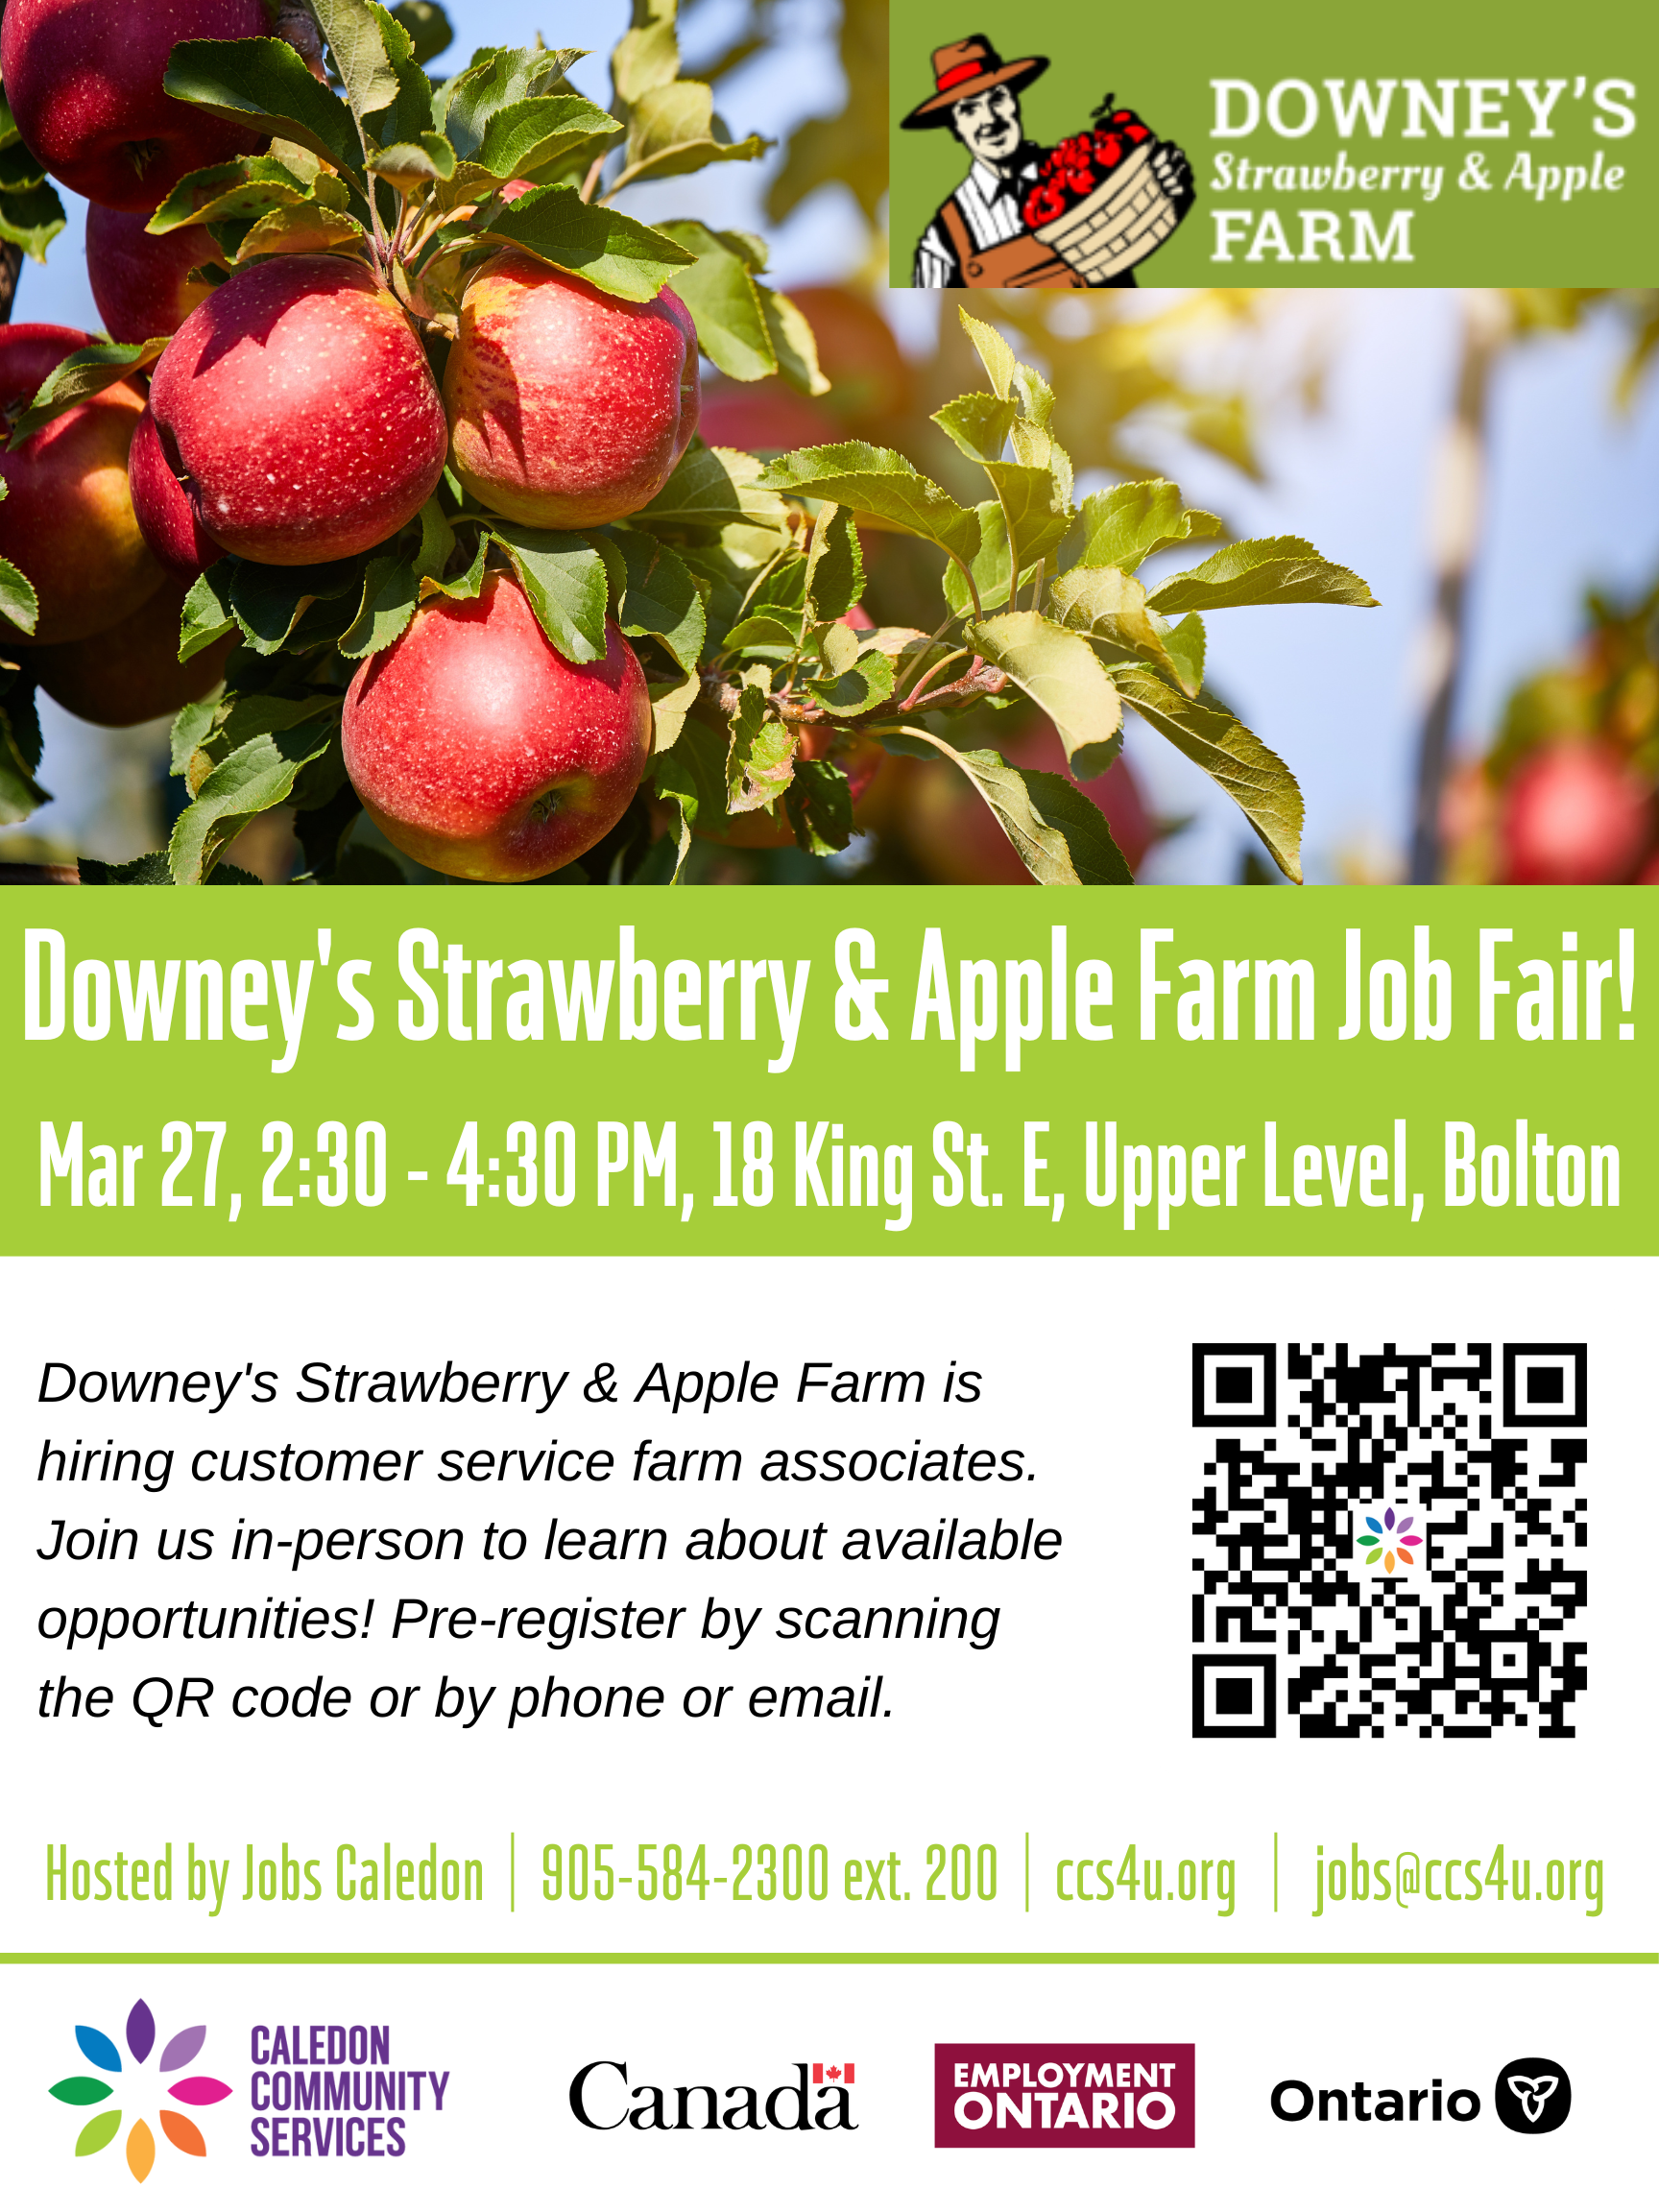 Downeys Farm JOB FAIR Mar 27 2023 approved